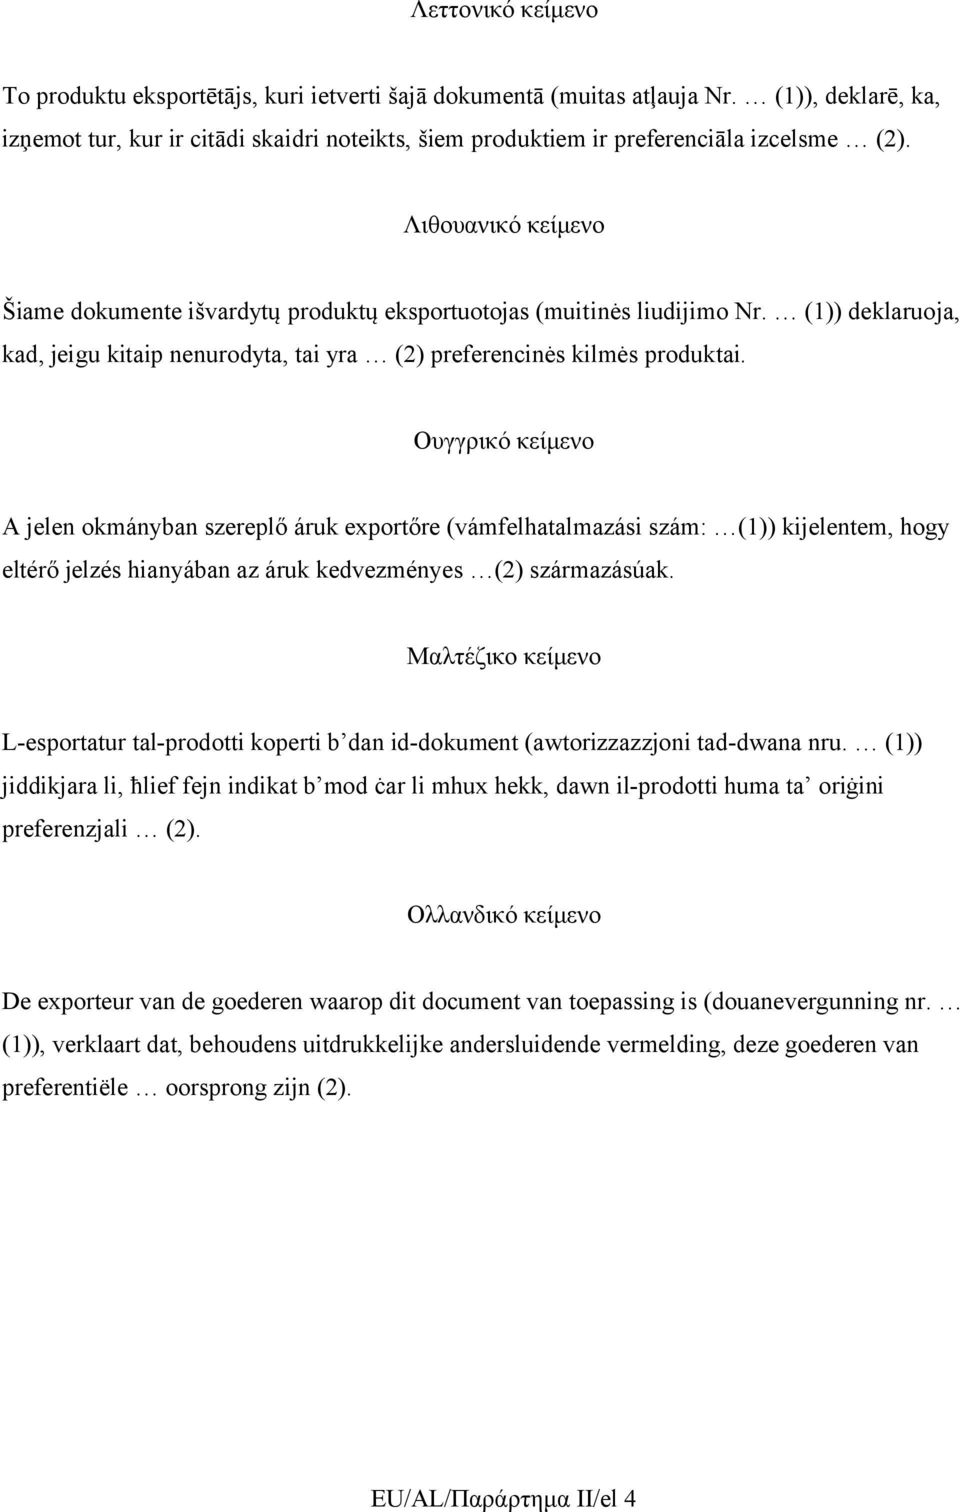 Λιθουανικό κείμενο Šiame dokumente išvardytų produktų eksportuotojas (muitinės liudijimo Nr. (1)) deklaruoja, kad, jeigu kitaip nenurodyta, tai yra (2) preferencinės kilmės produktai.